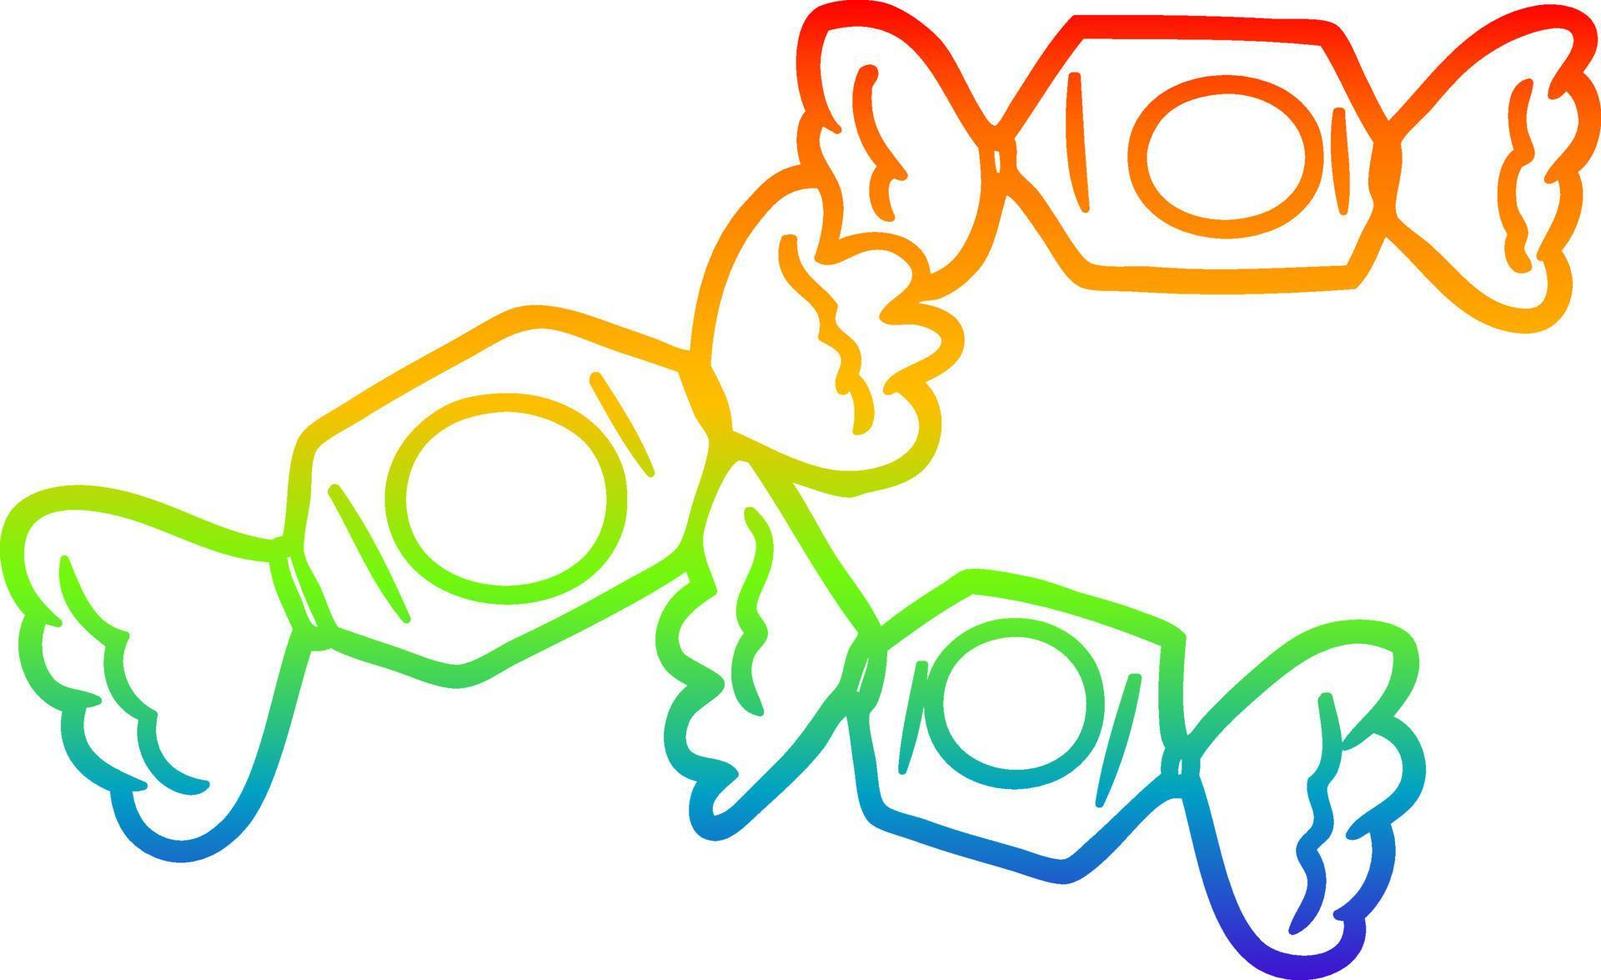 caramella avvolta del fumetto del disegno della linea del gradiente dell'arcobaleno vettore